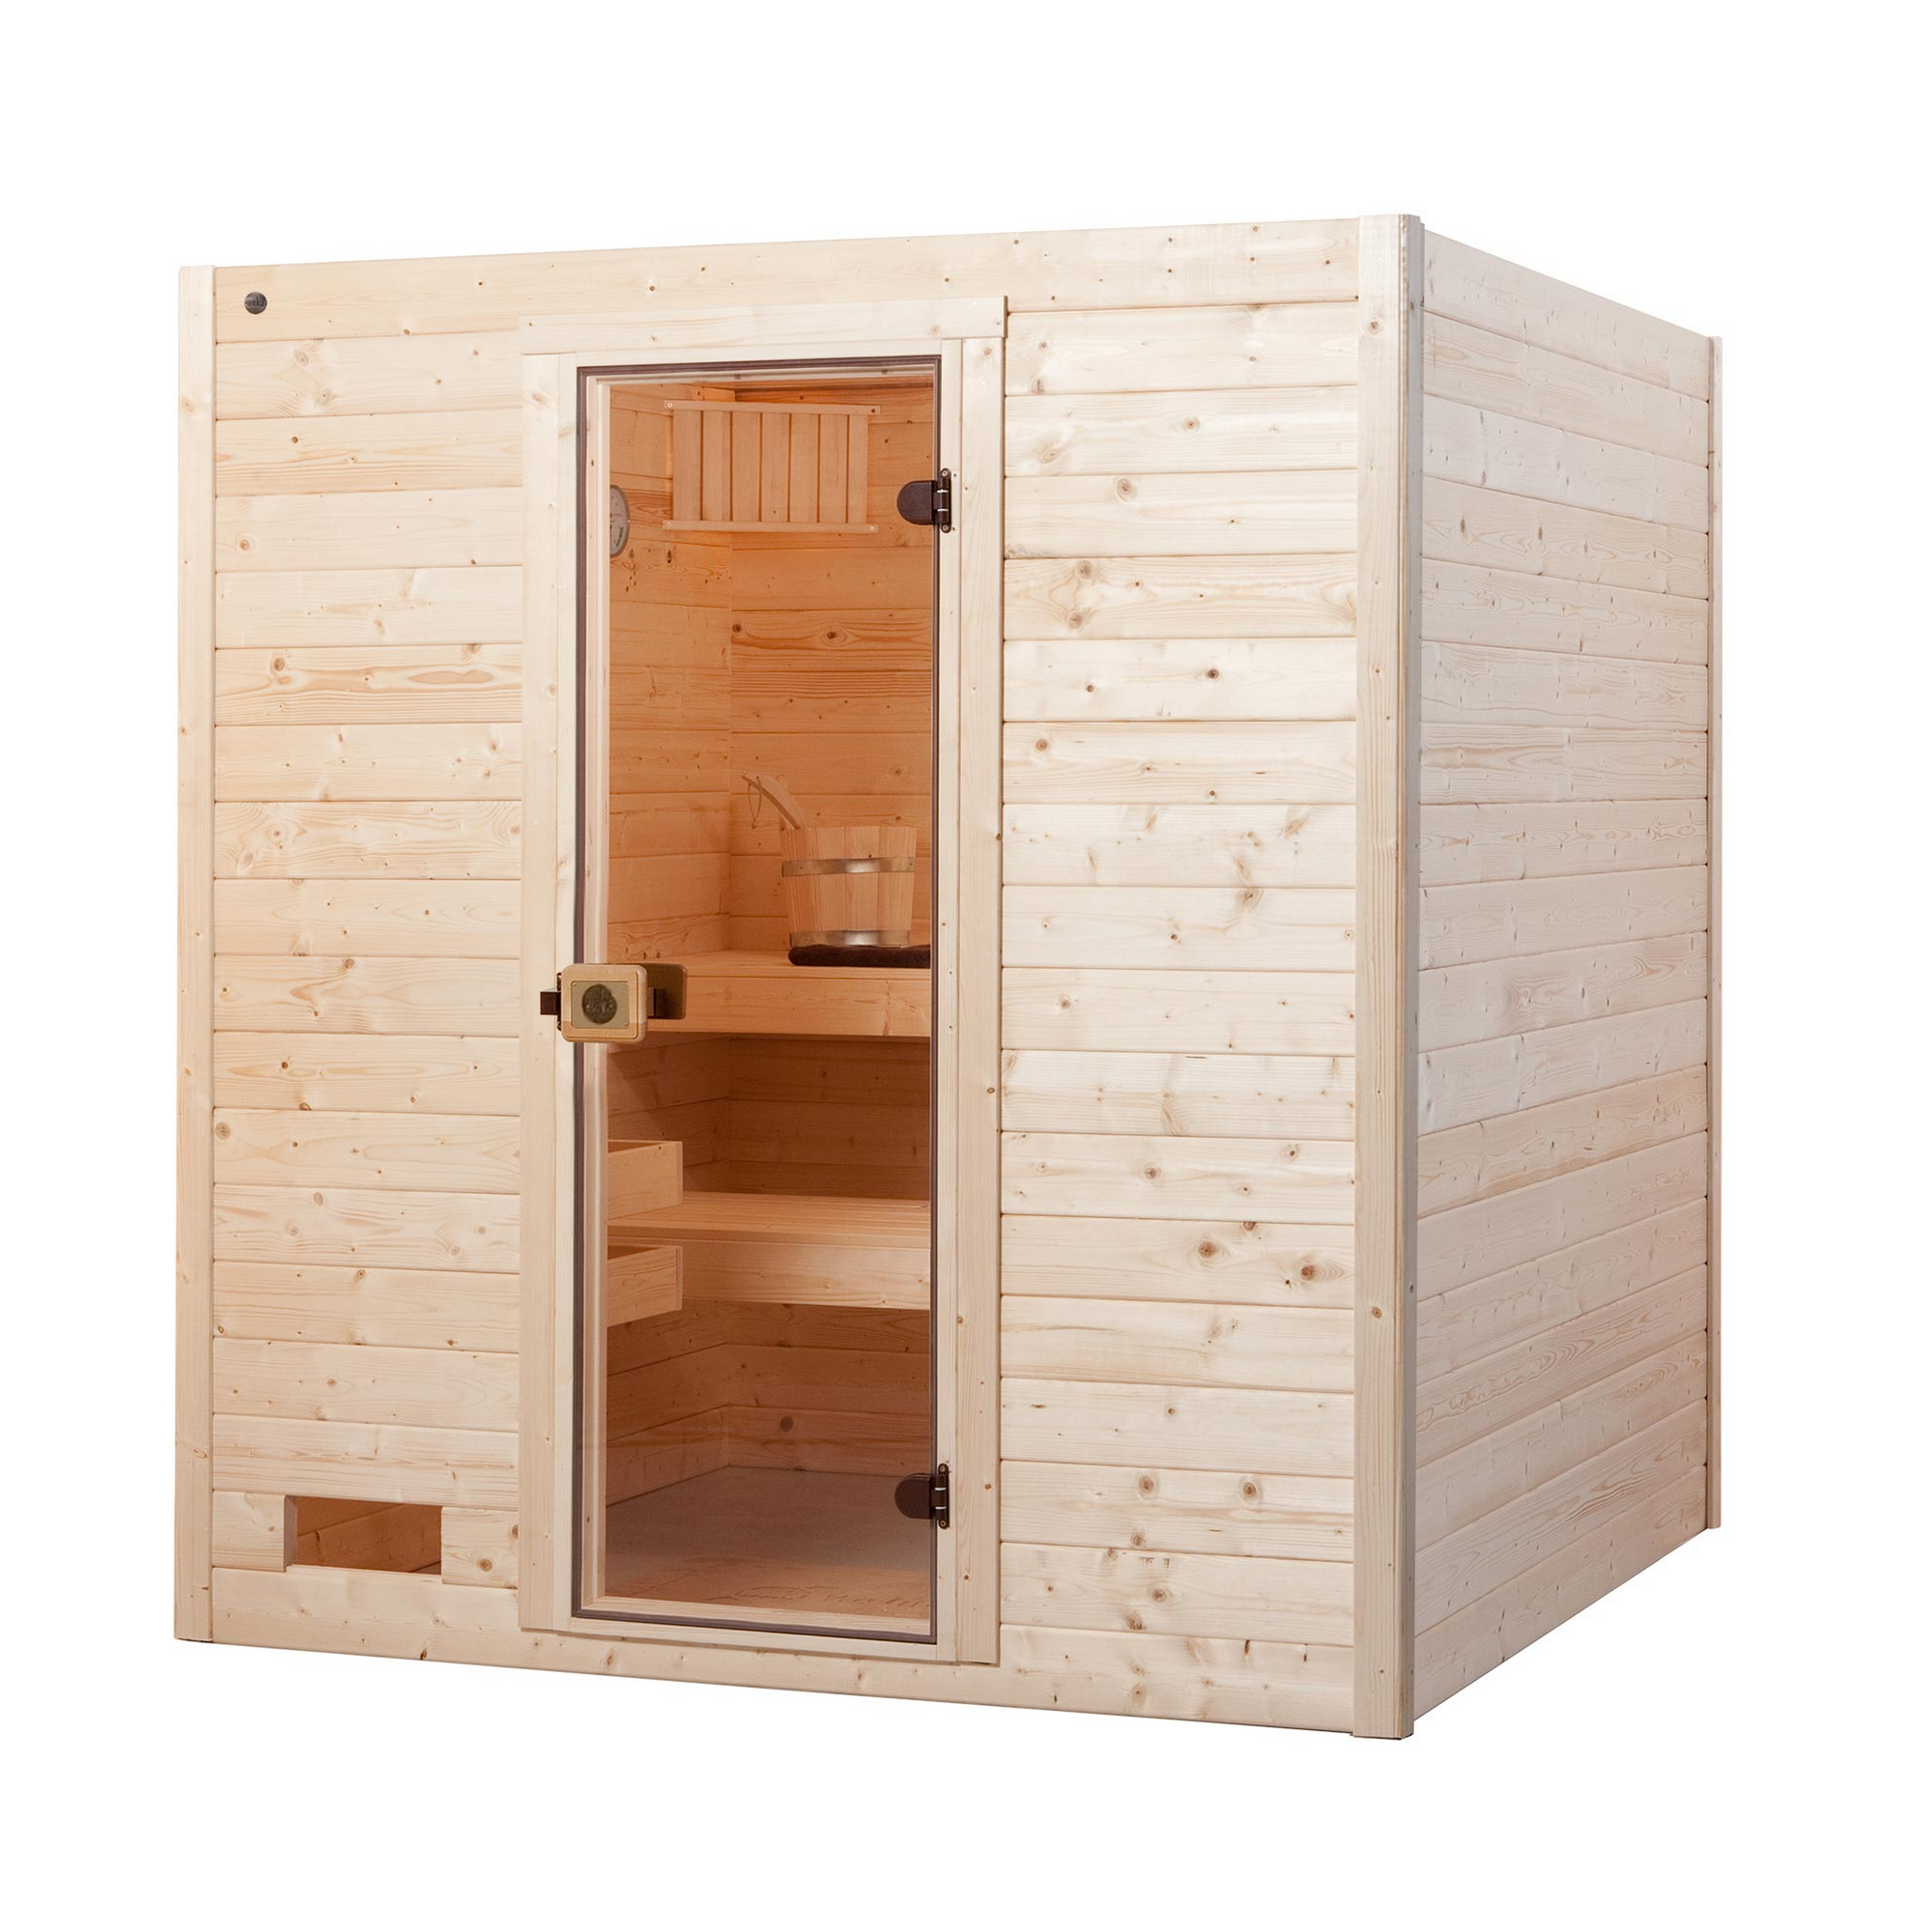 Massivholz-Sauna 'Valida 3' mit 9 kW K-Ofenset, integrierter Steuerung, Glastür 187 x 187 x 203,5 cm + product picture